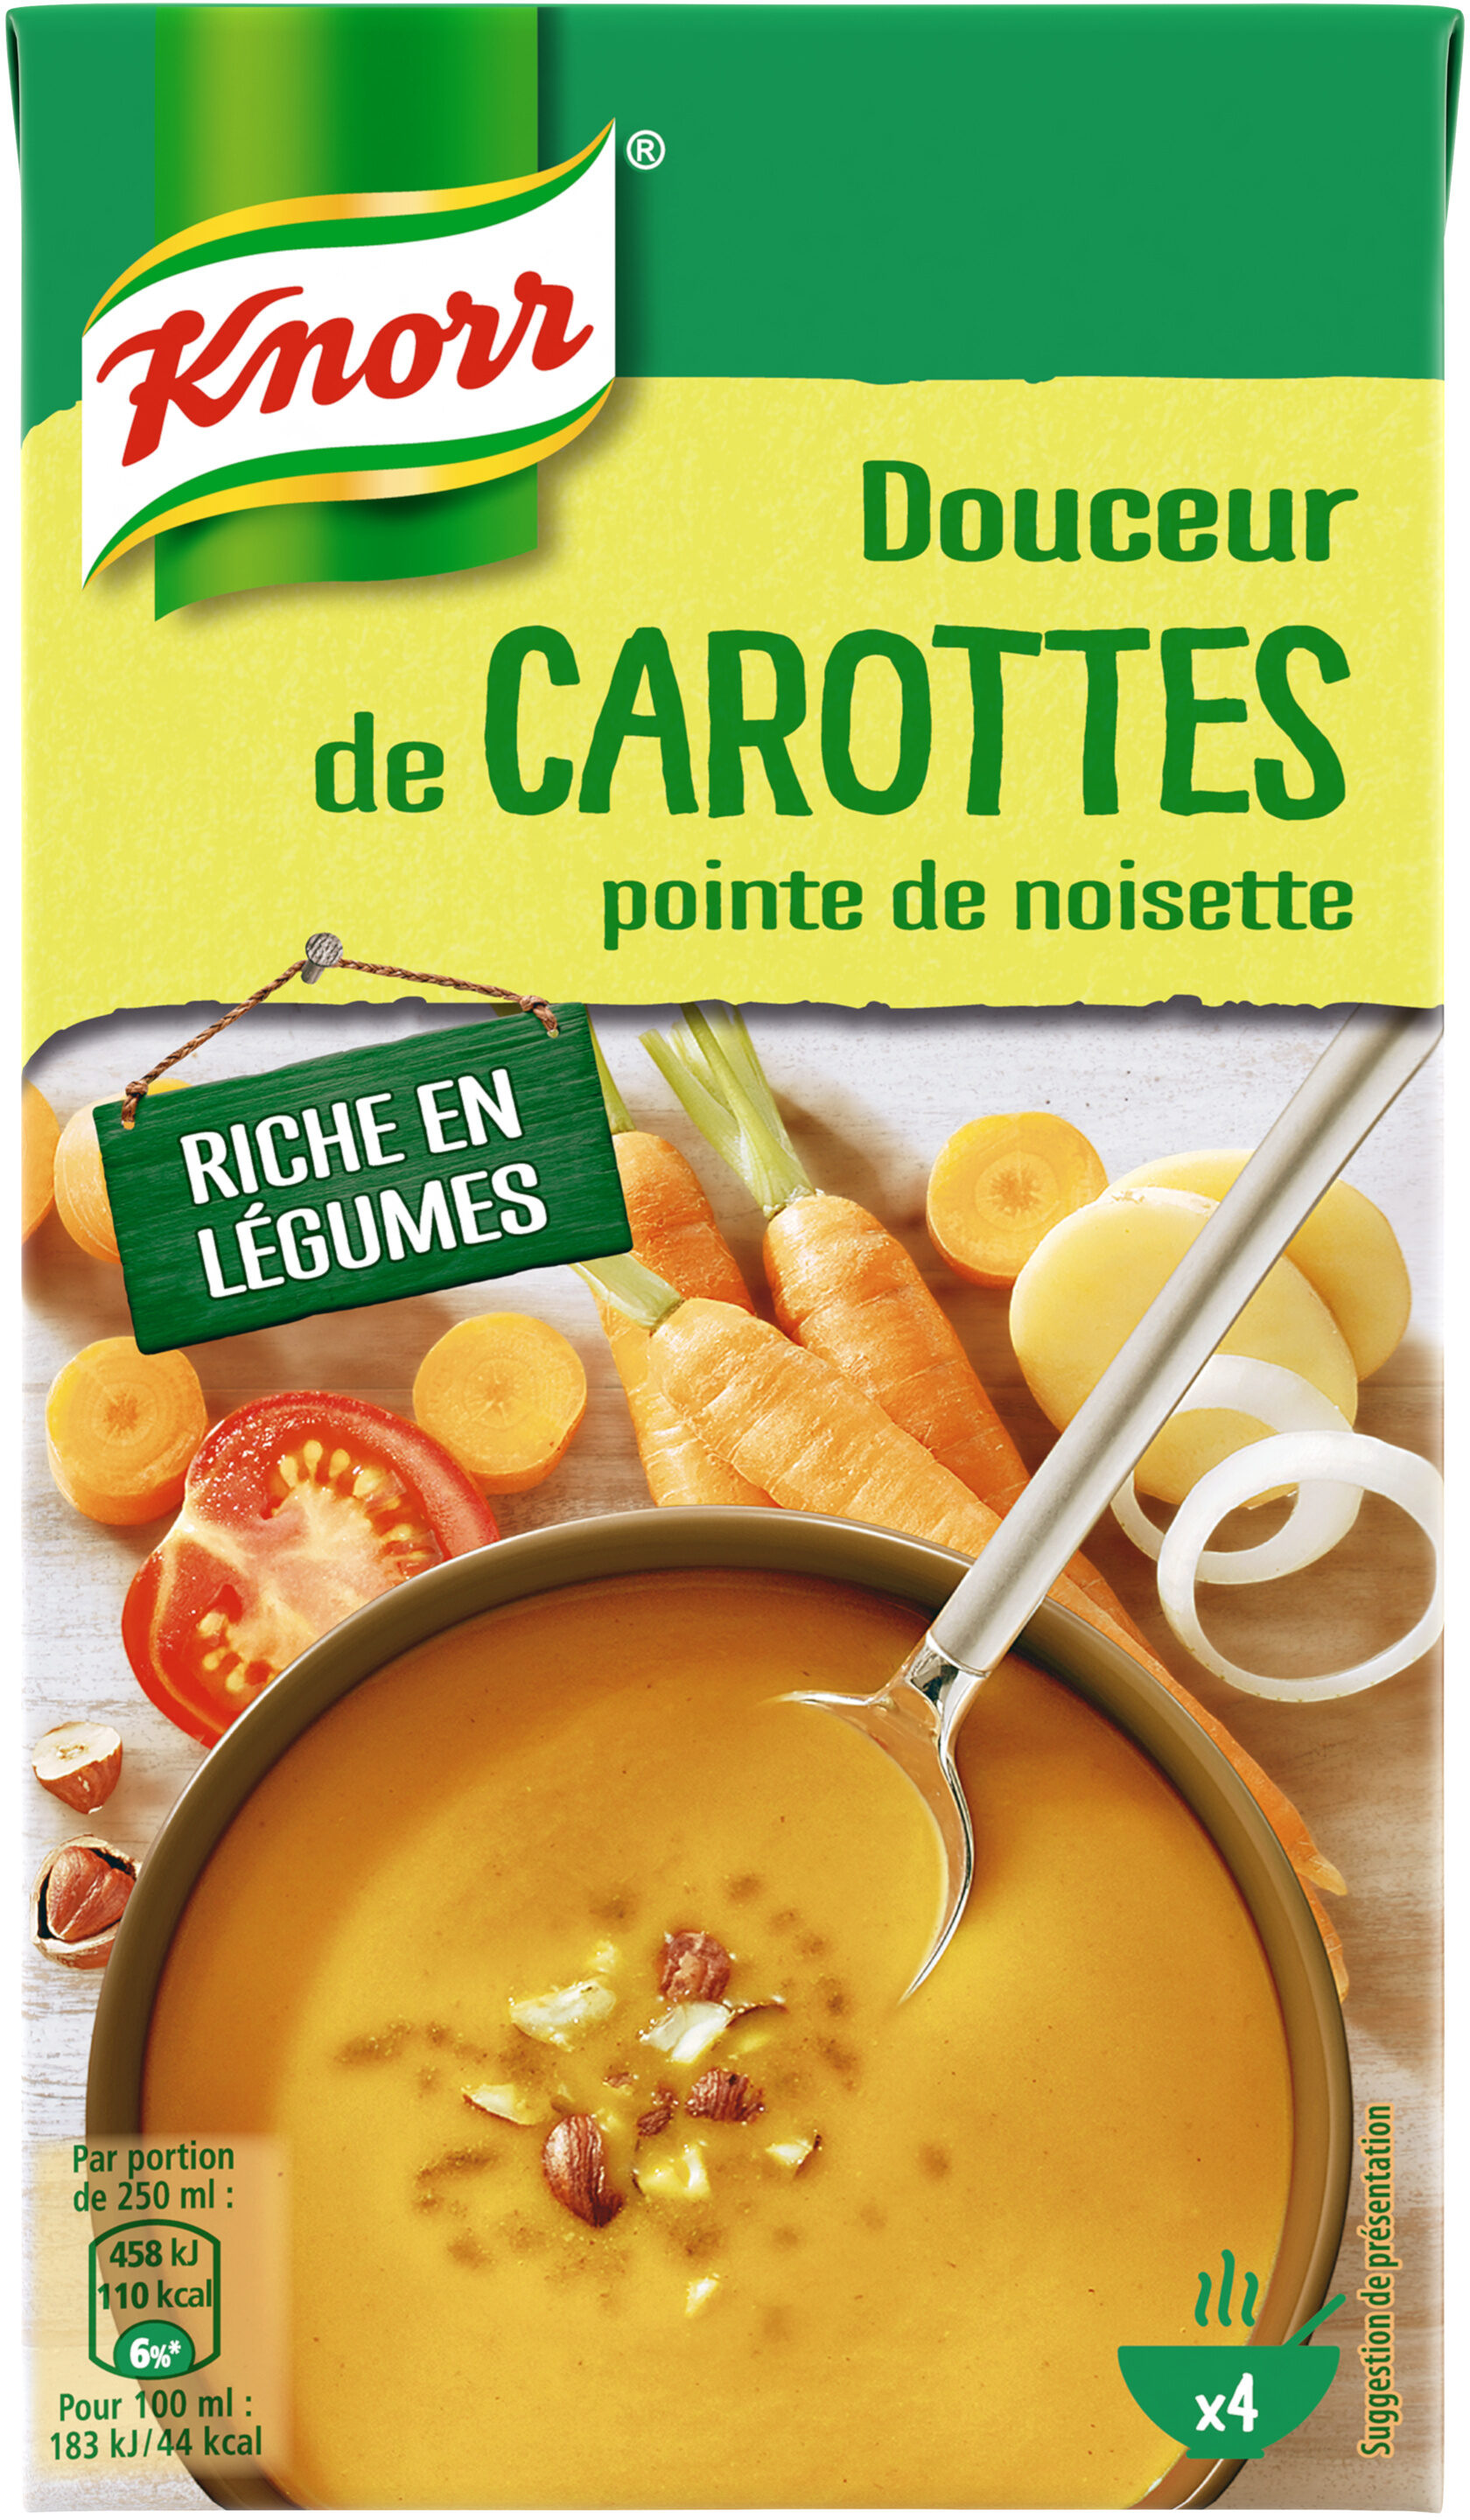 Knorr Soupe Liquide Douceur de Carottes Pointe de Noisette Brique 4 Portions 1L - Product - fr